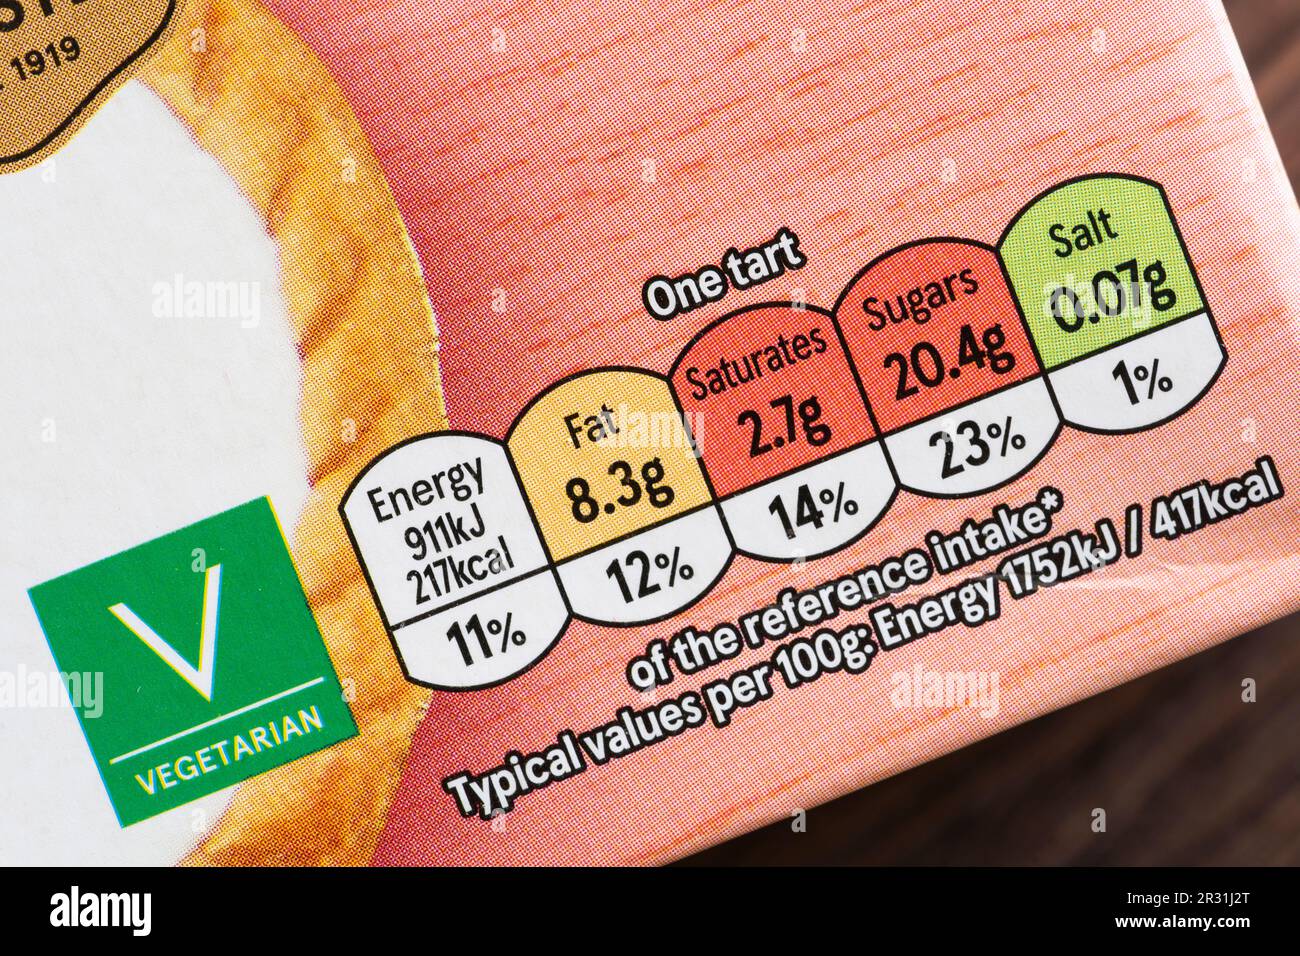 Lebensmittelnahrung und vegetarisches Etikett auf der Vorderseite der Packung auf Tesco Eigenmarke Cherry bakewell Torts, England. Konzept: Nährwertkennzeichnung Zuckergehalt Stockfoto